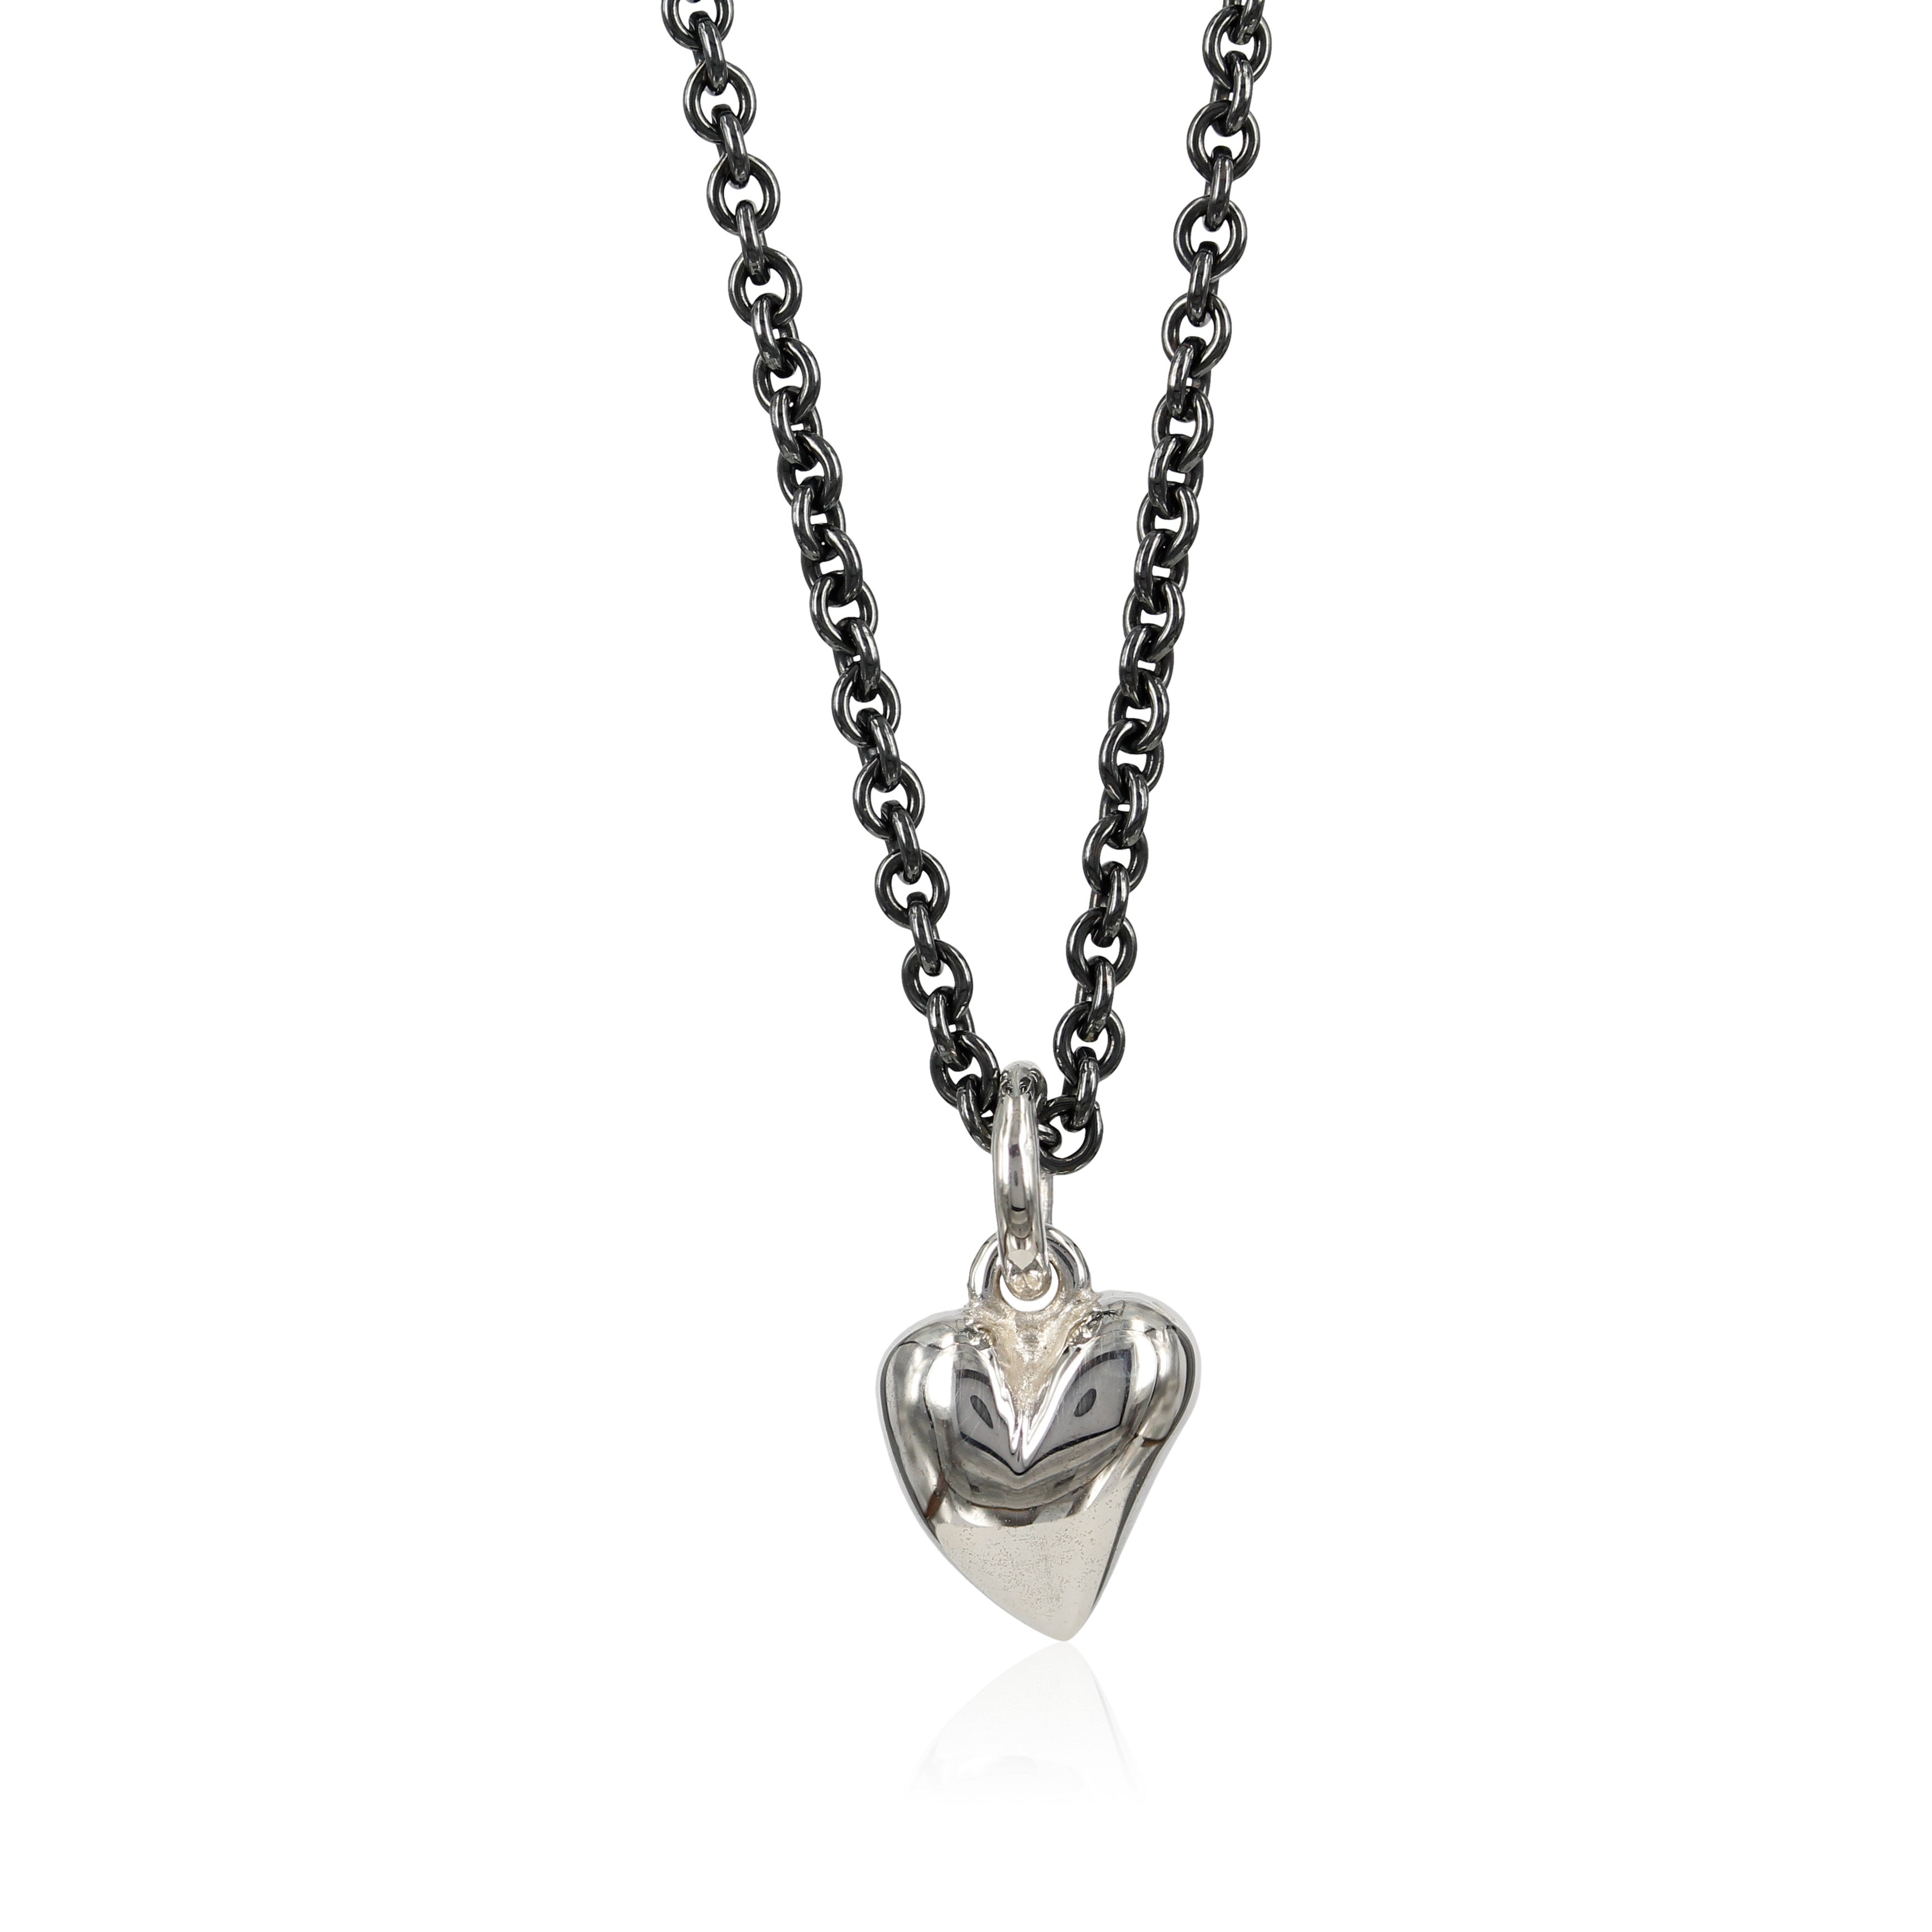 blank sølv - Love - Sølv hjerte vedhæng -  Lille fint sølv hjerte, designet med skæve buer i massiv sølv. Vedhænget er fint i en enkel kæde om halsen, eller som charm i et armbånd.